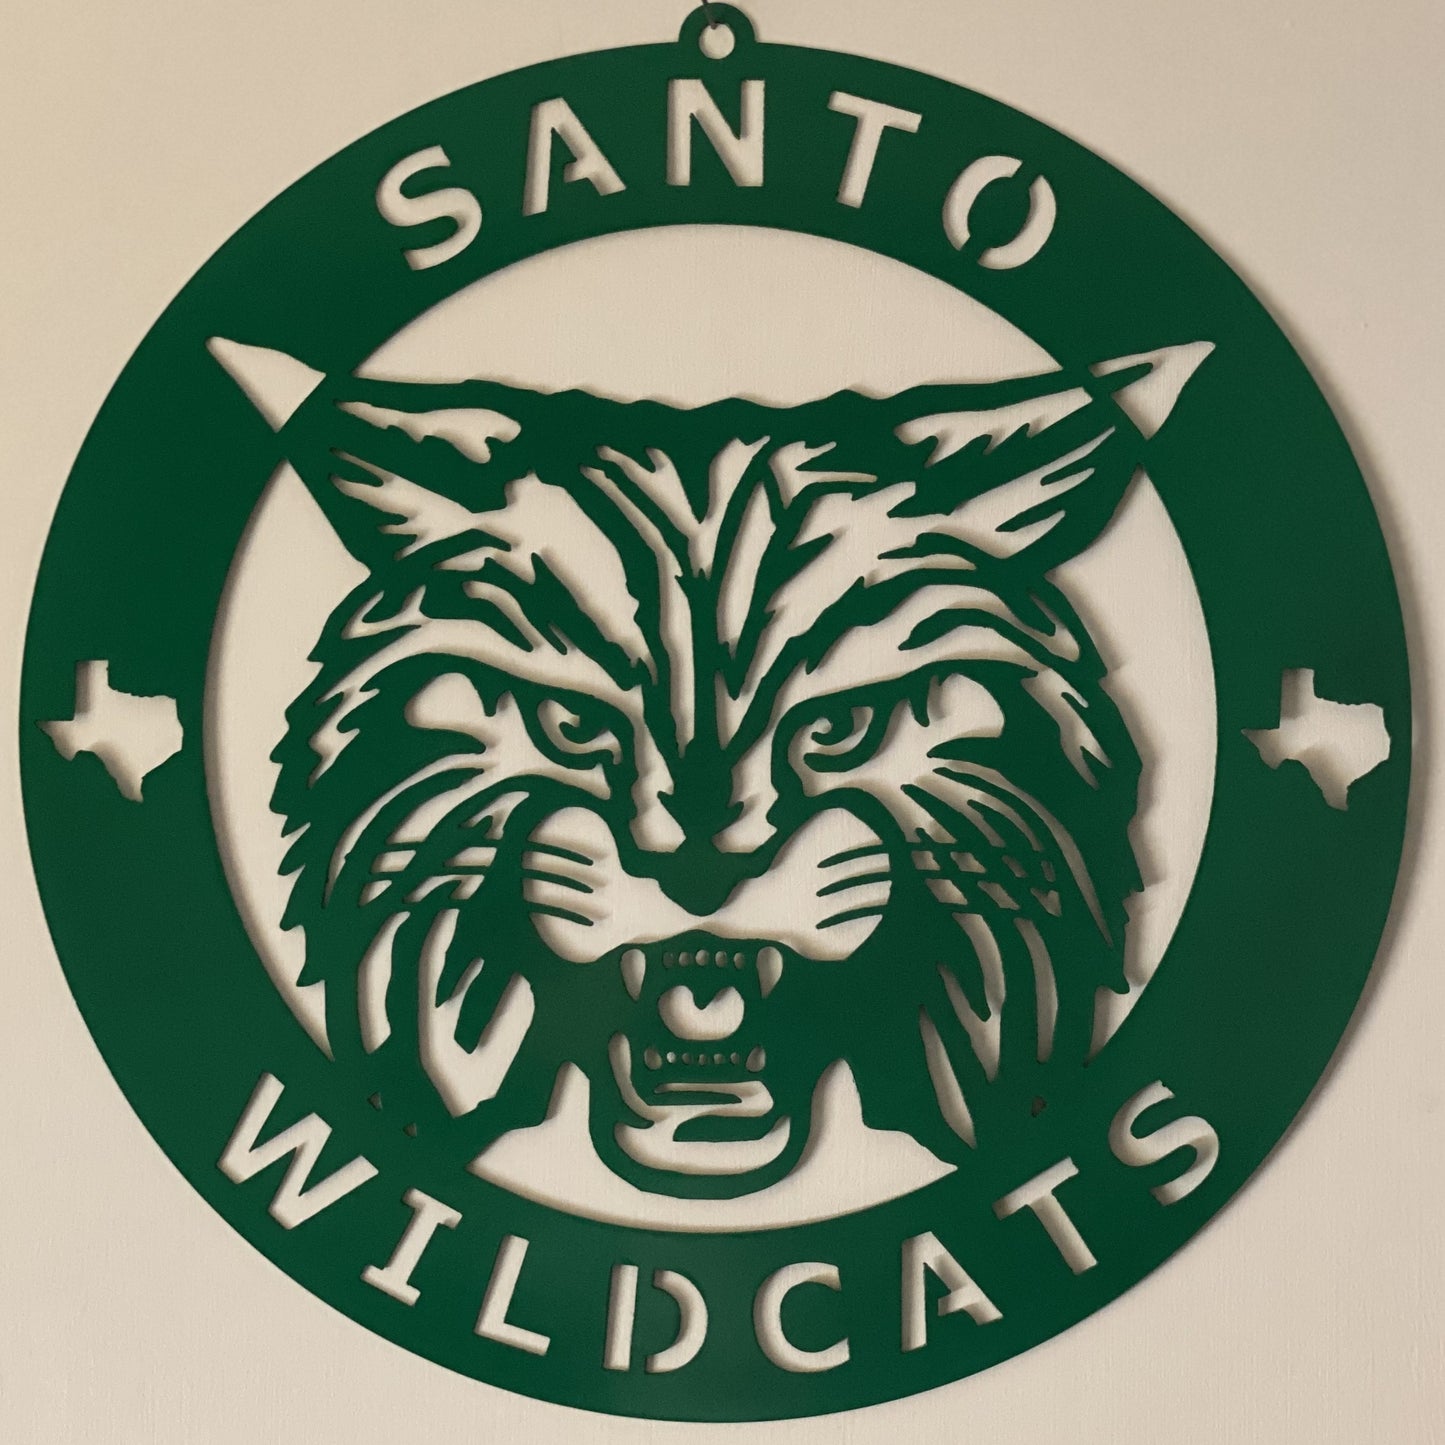 Santo Wildcats